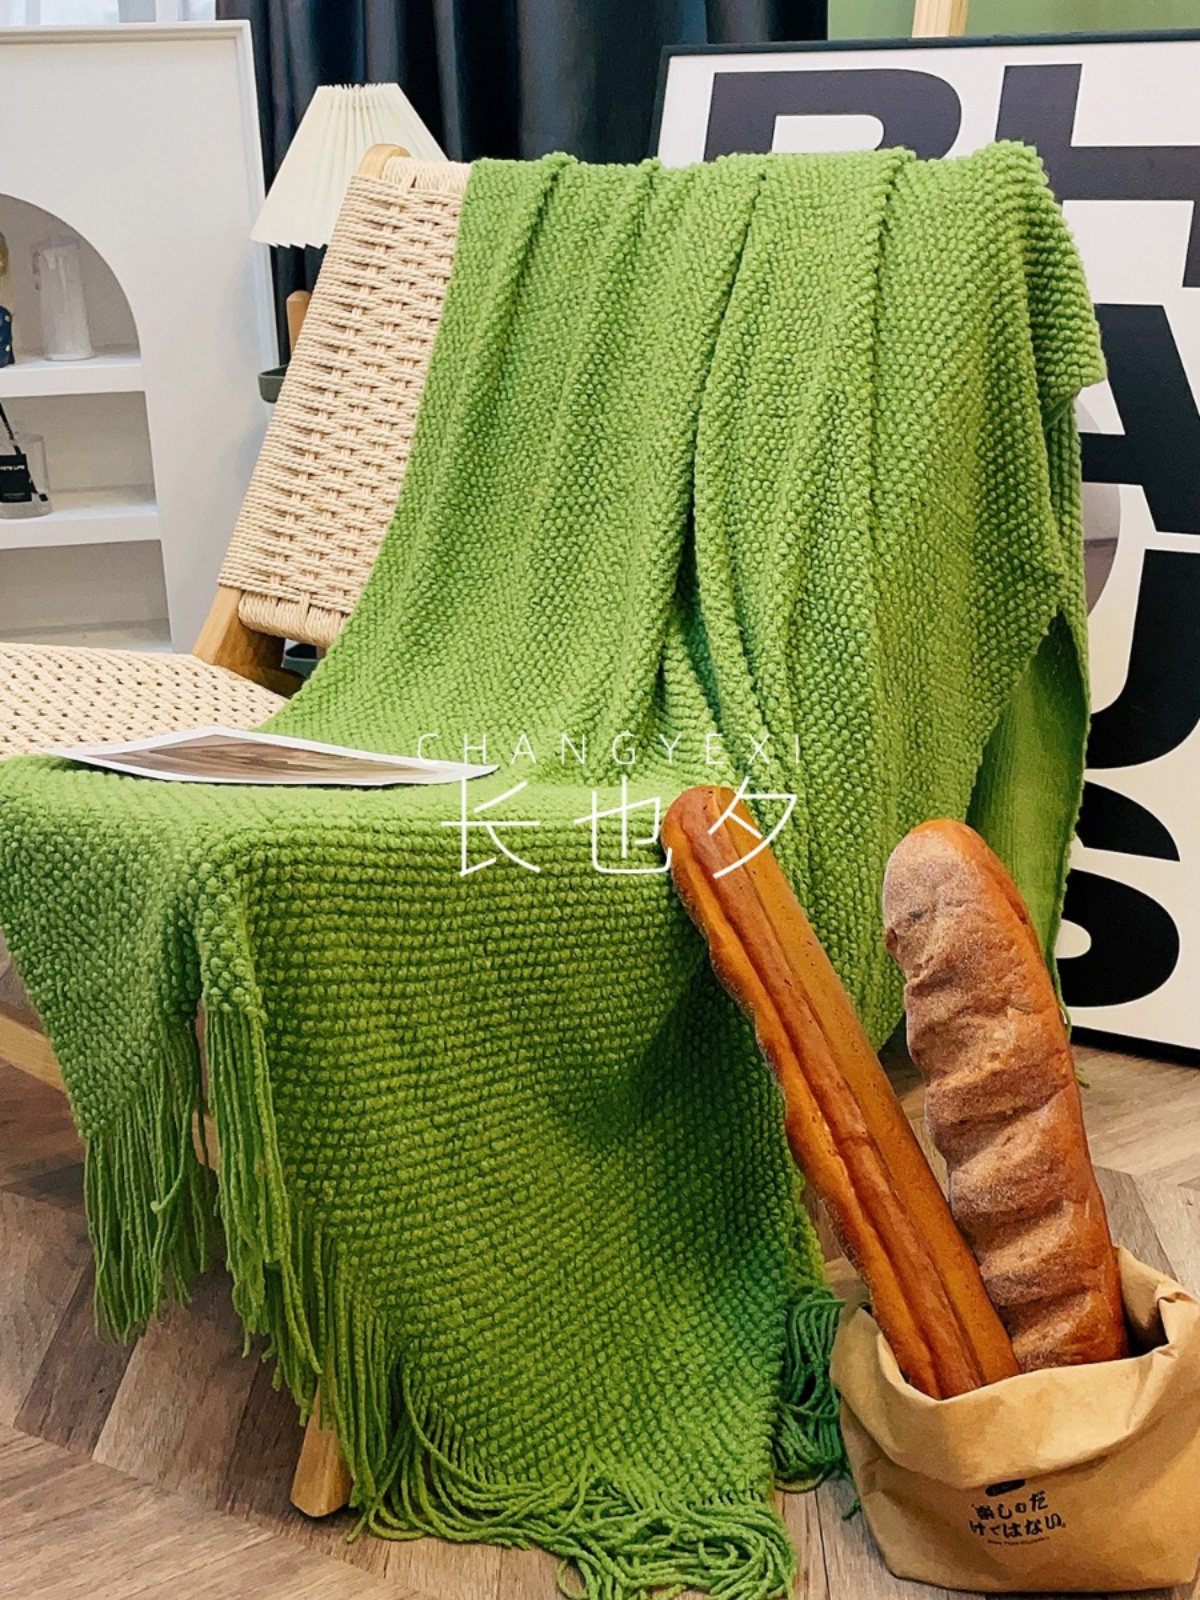 酪梨綠美式鄉村風格多功能針織沙發毯 午休蓋毯休閒毯裝飾 (8.3折)